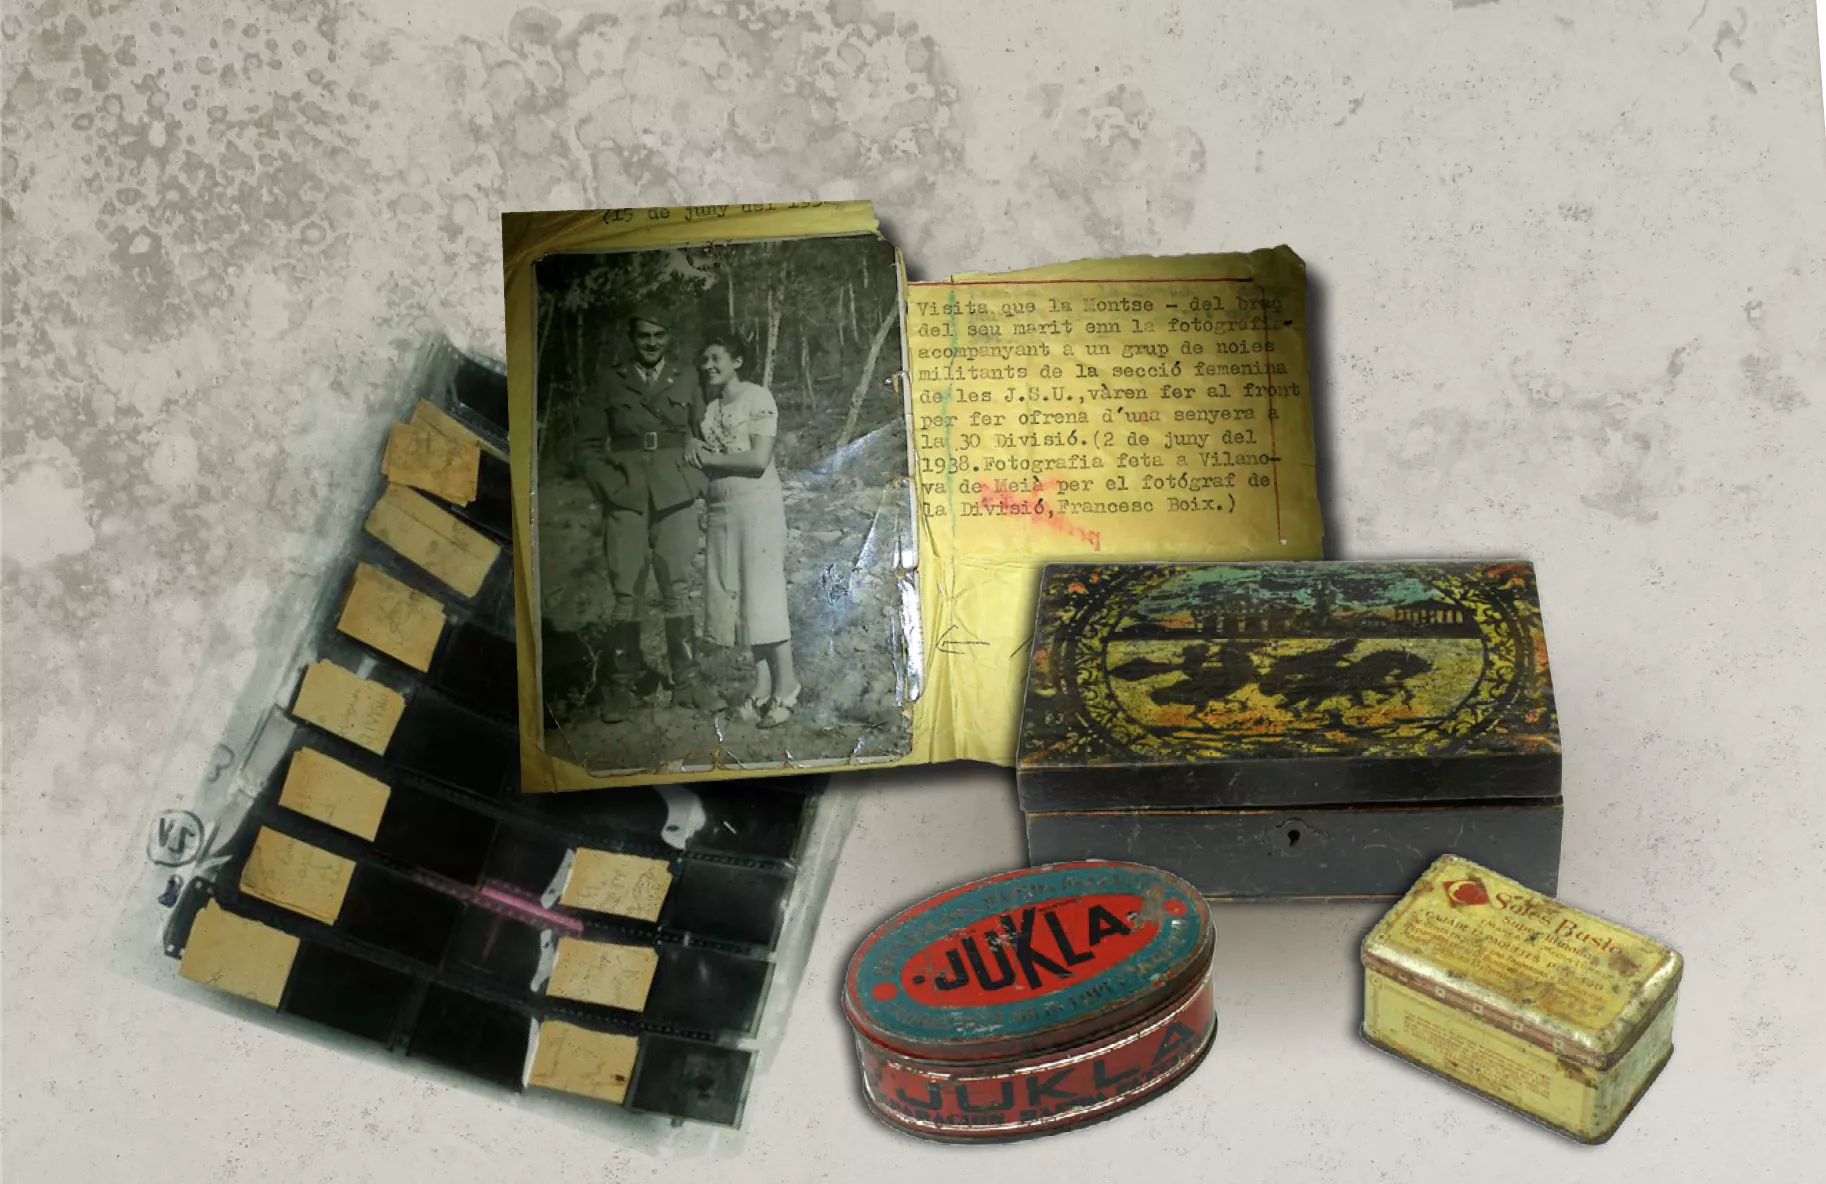 Les capses on han estat guardats els negatius de Francesc Boix durant setanta anys i una de les fotografies que ha permès identificar el seu autor gràcies a l'anotació a màquina amb el nom de Boix